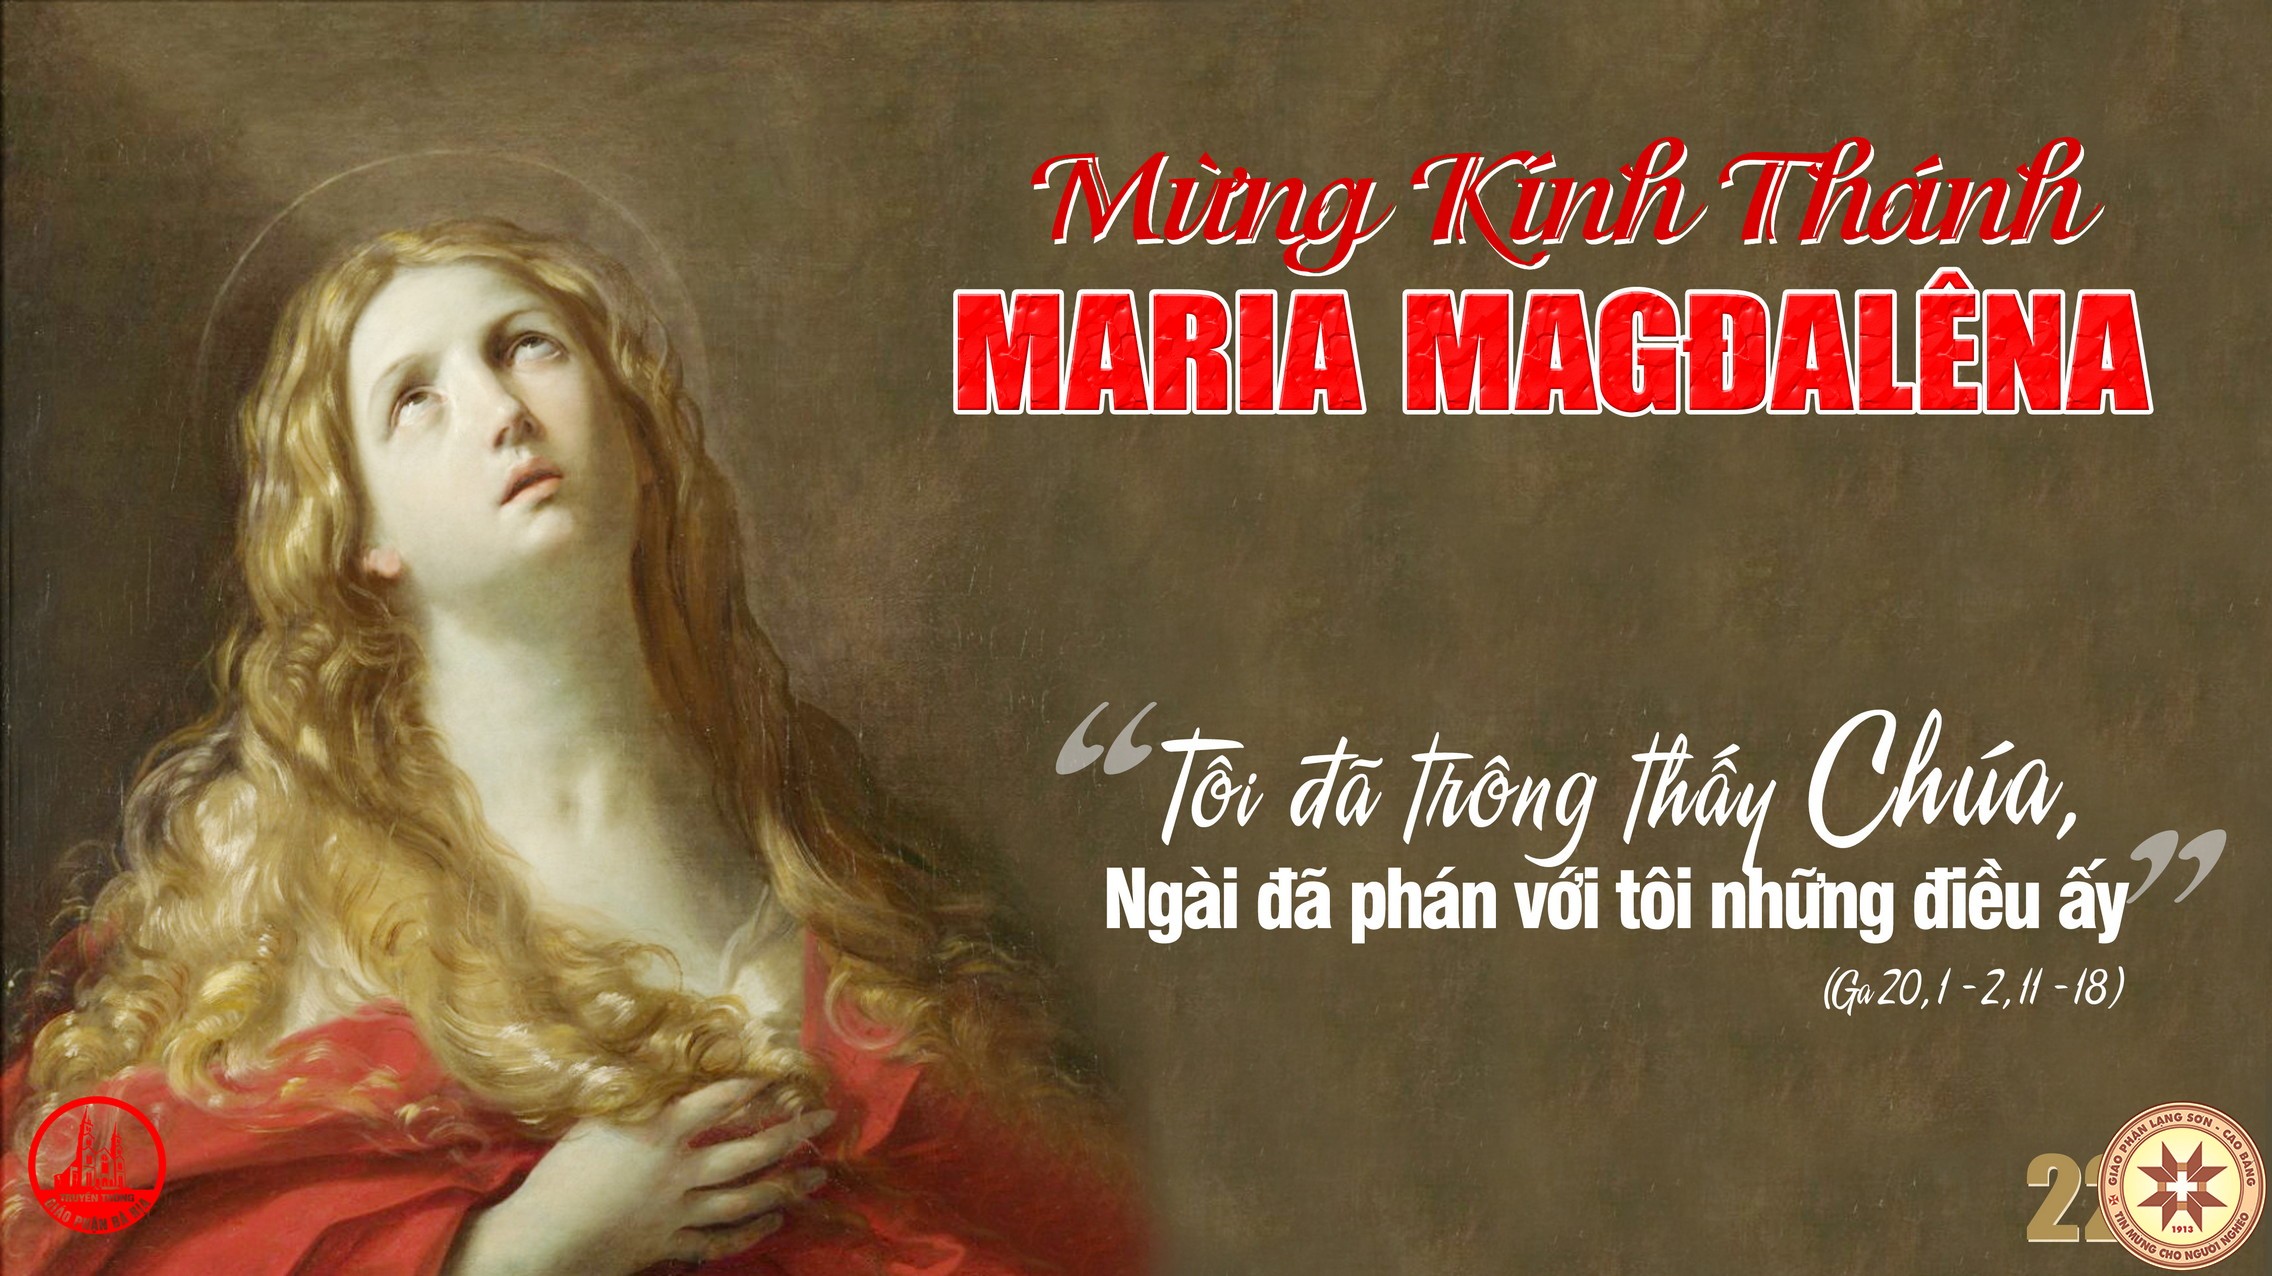 Thứ Năm, ngày 22/7: Thánh nữ Ma-ri-a Ma-đa-lê-na